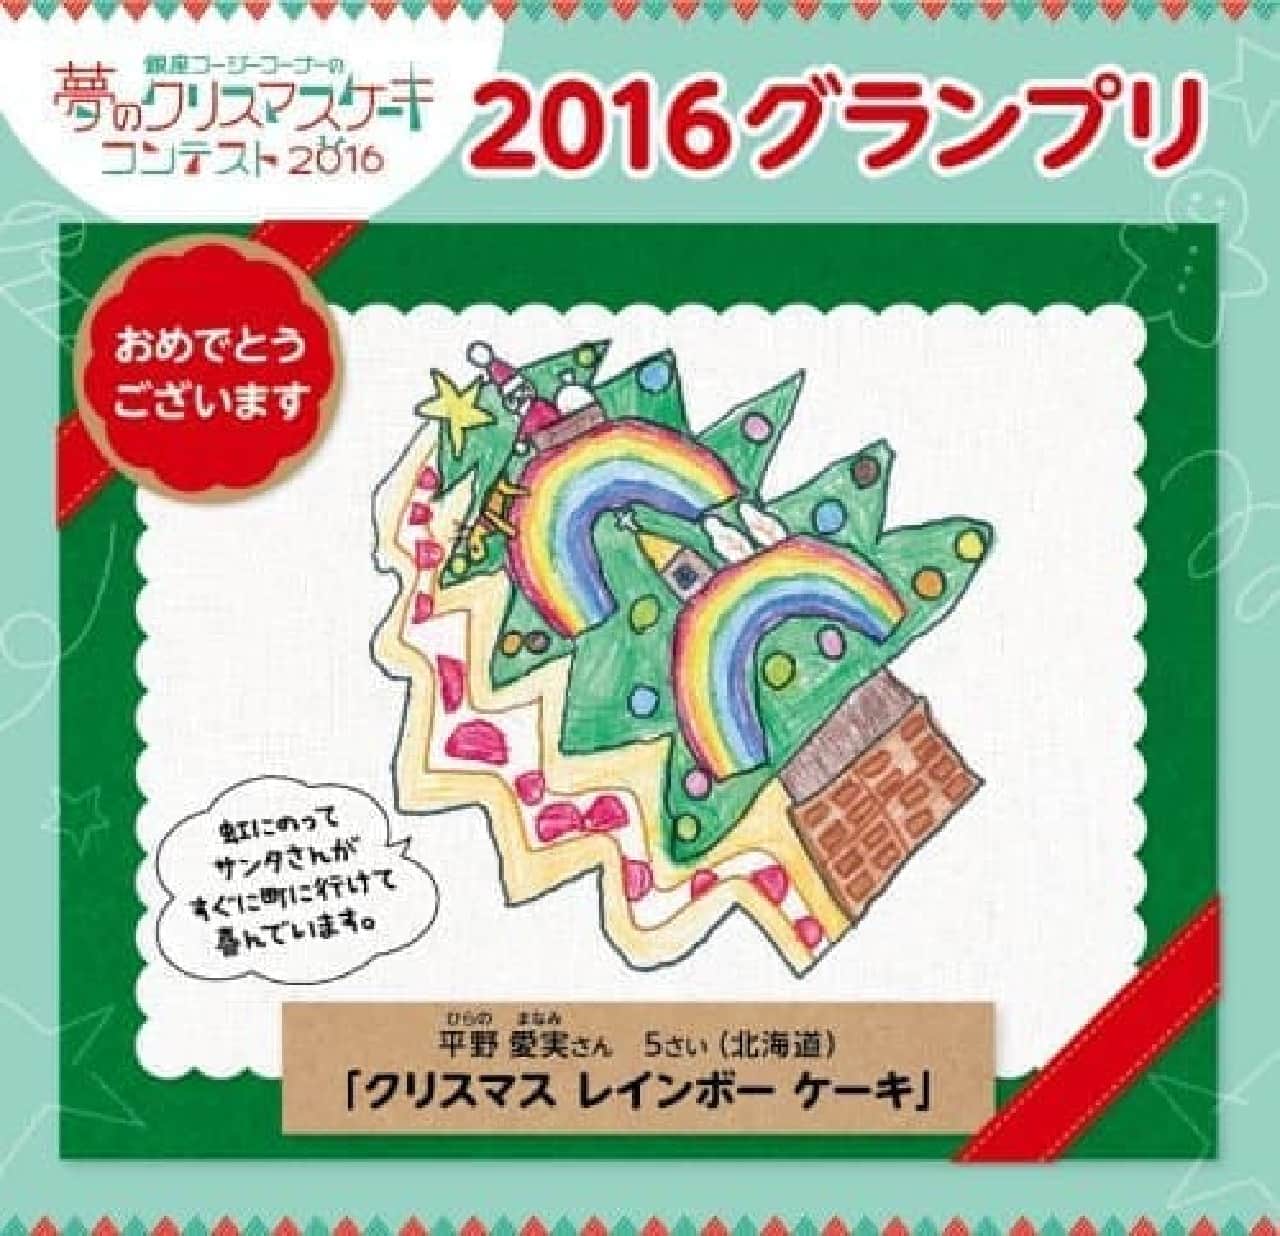 銀座コージーコーナー「夢のクリスマスケーキコンテスト」